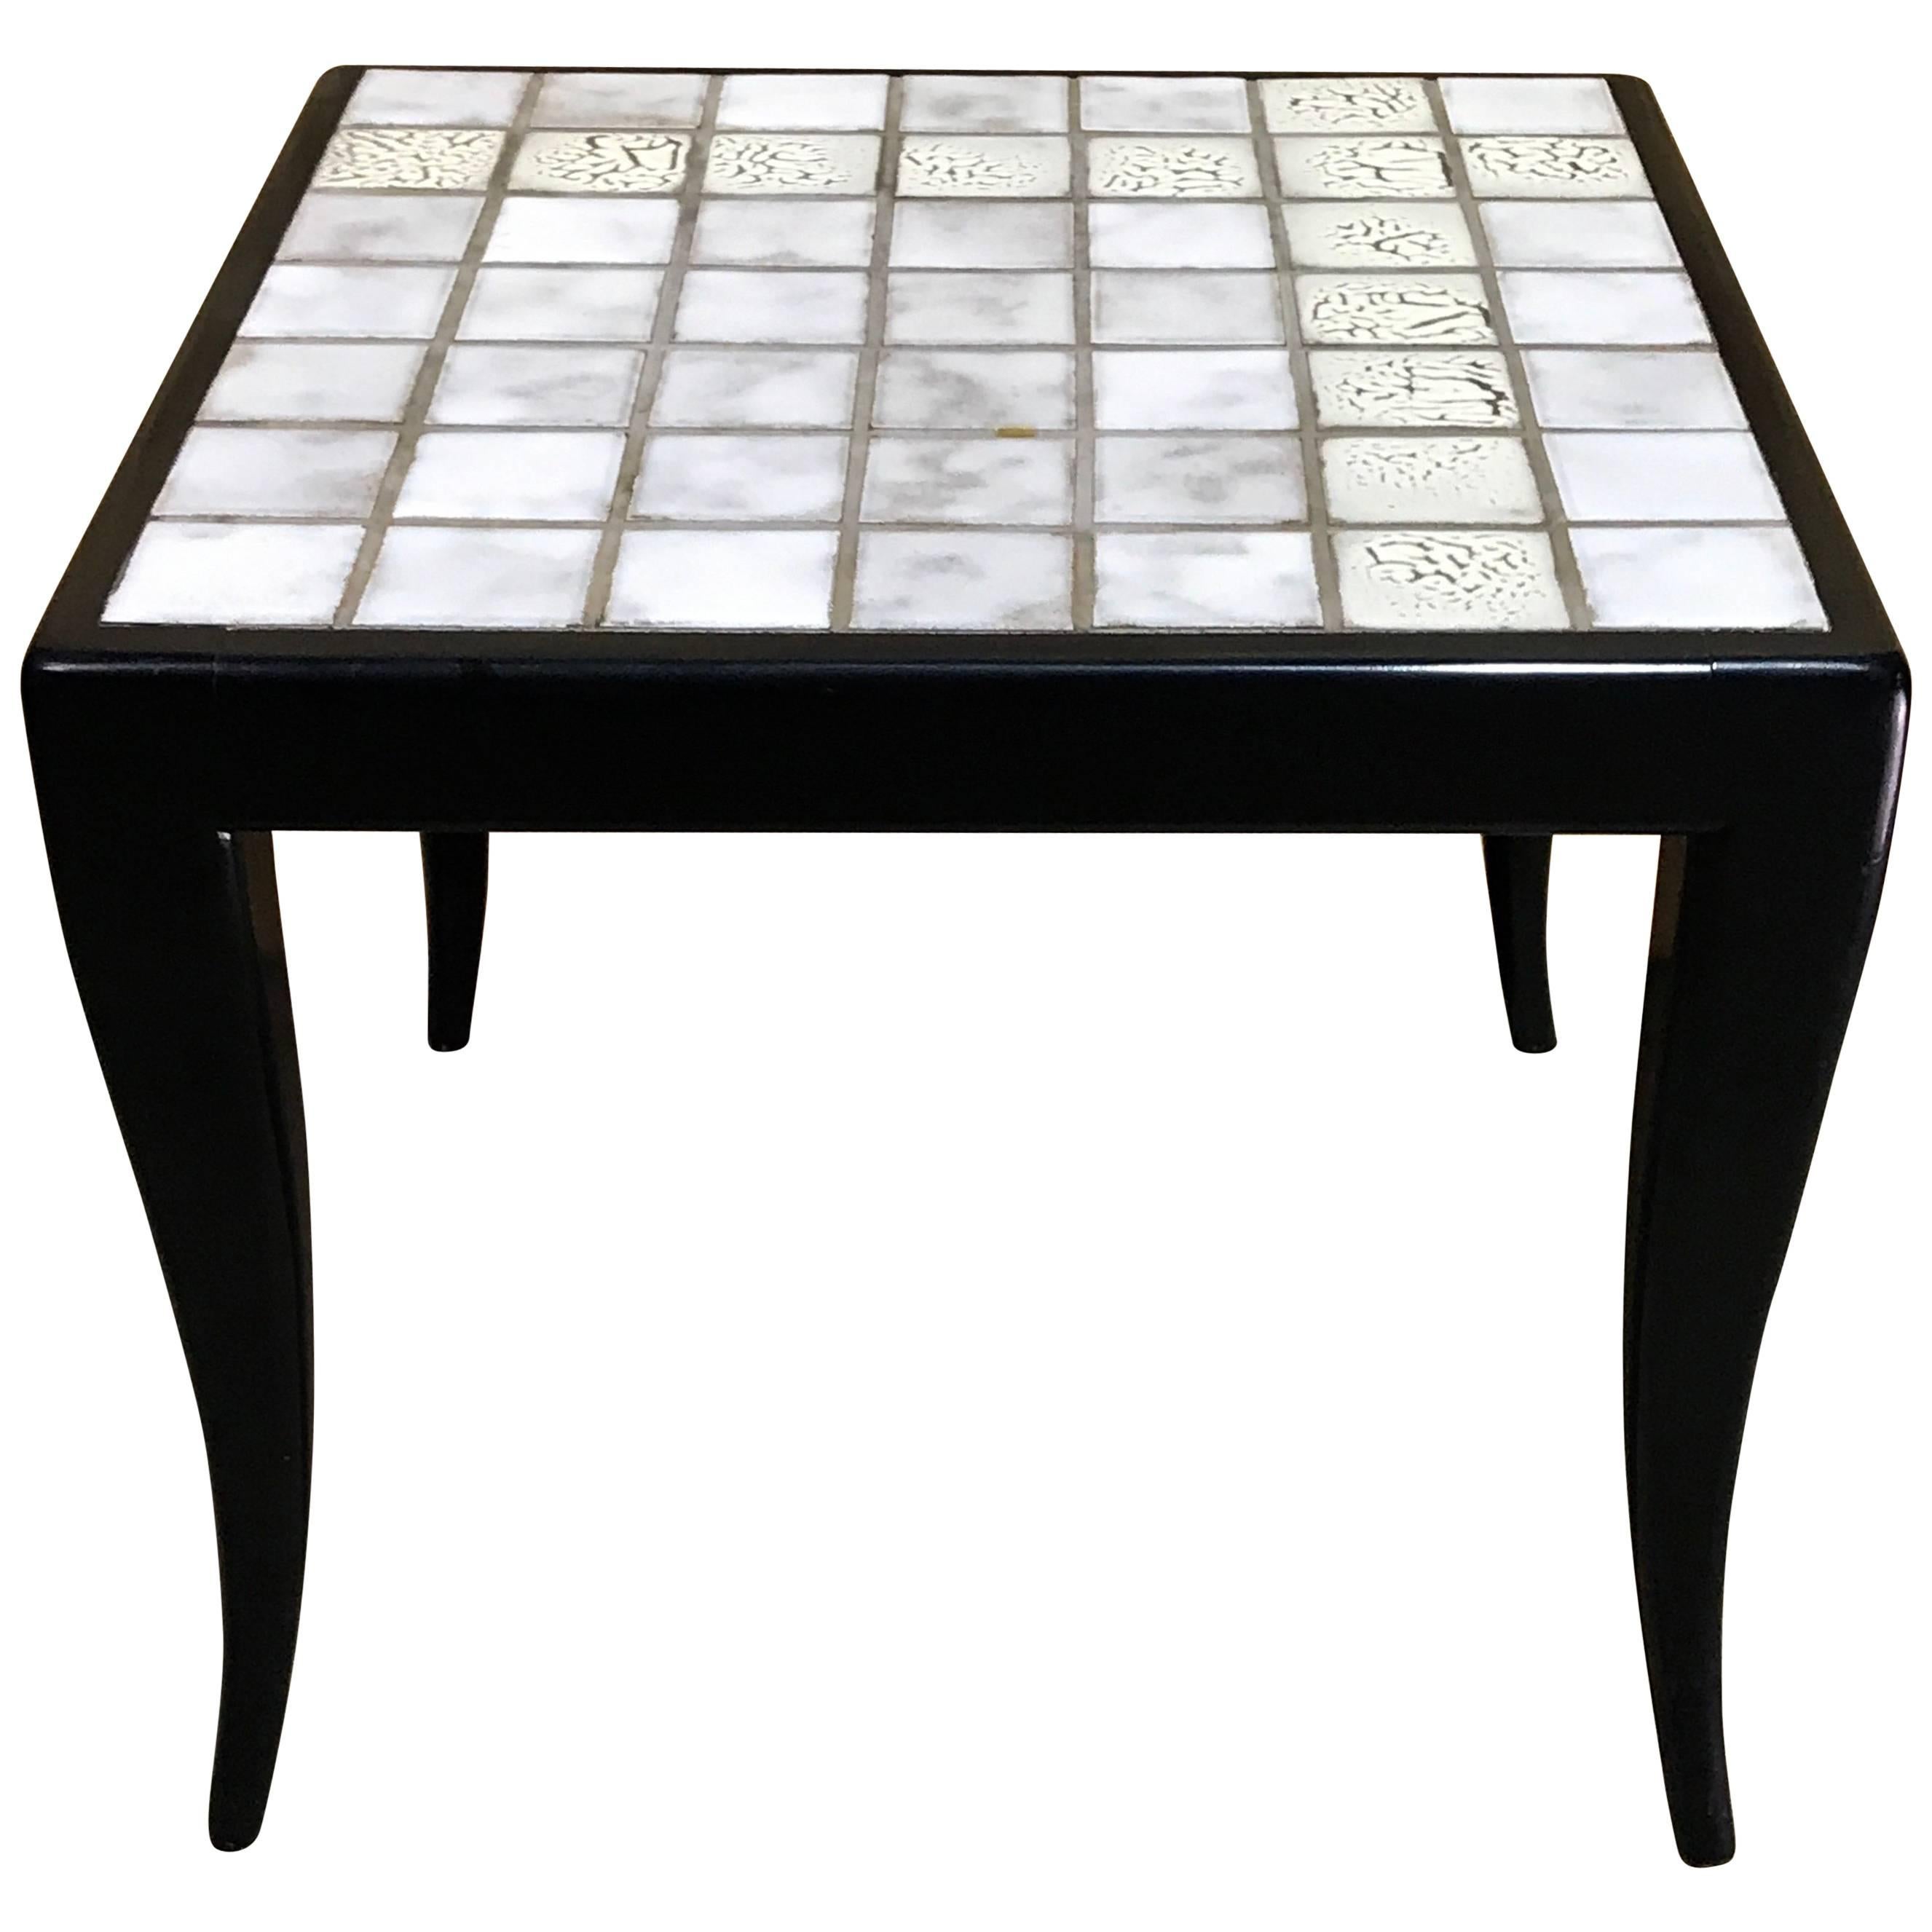 Italian Midcentury White Tiled Side Table